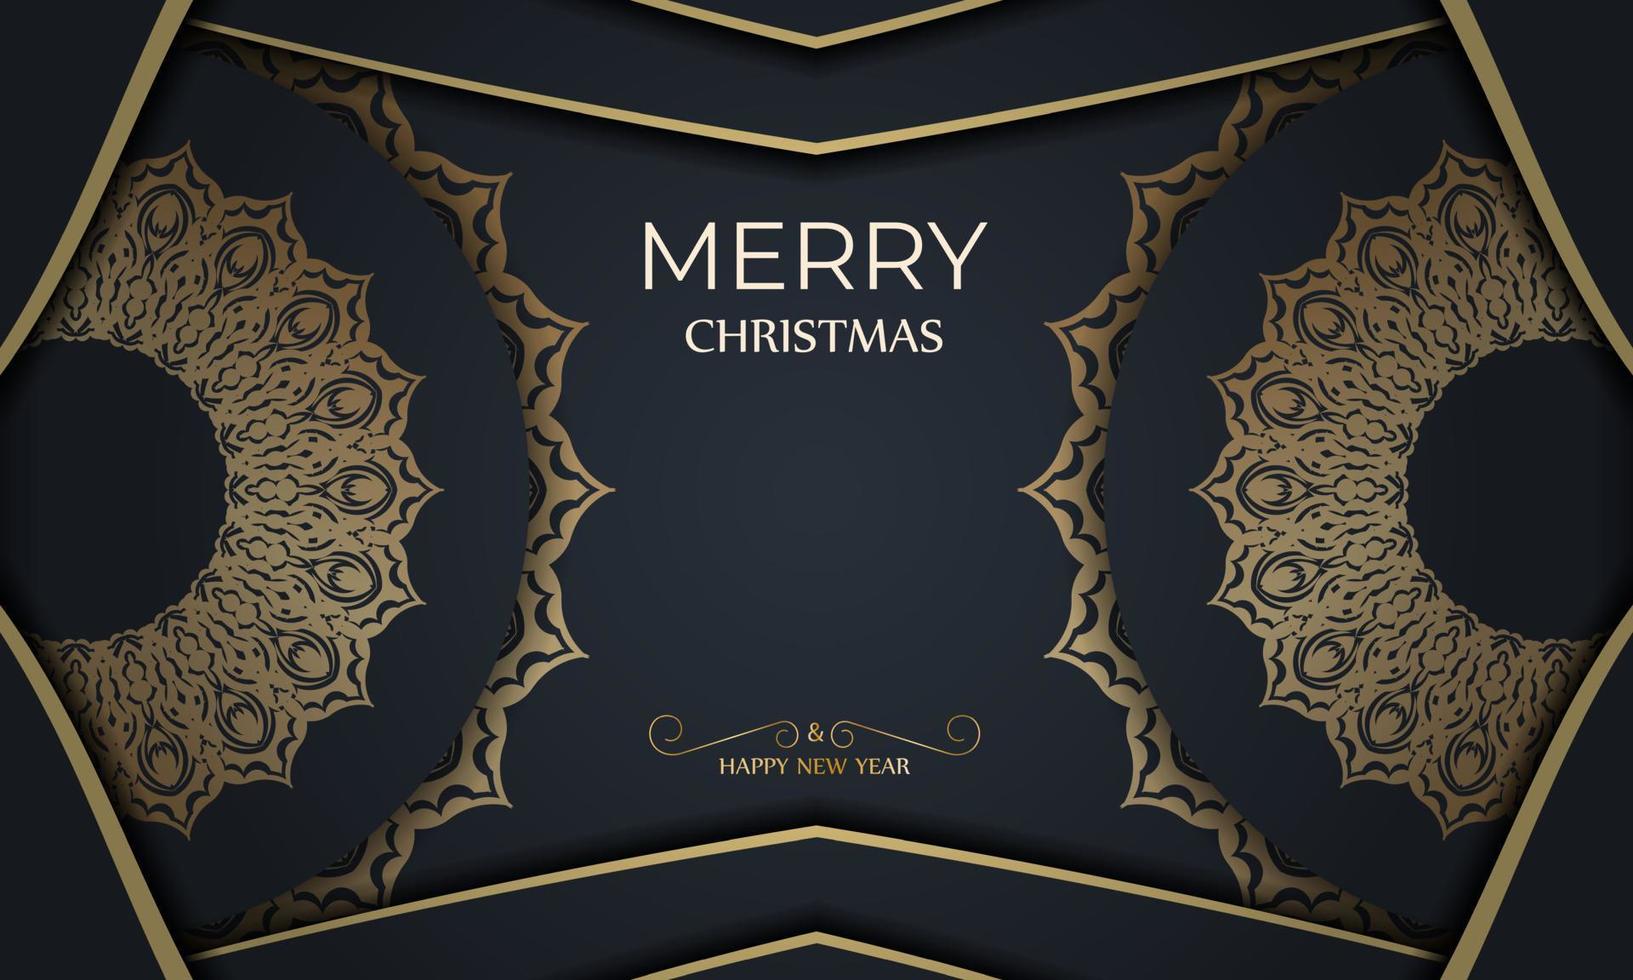 plantilla de folleto de saludo de feliz navidad y feliz año nuevo en color azul oscuro con adorno de oro de invierno vector